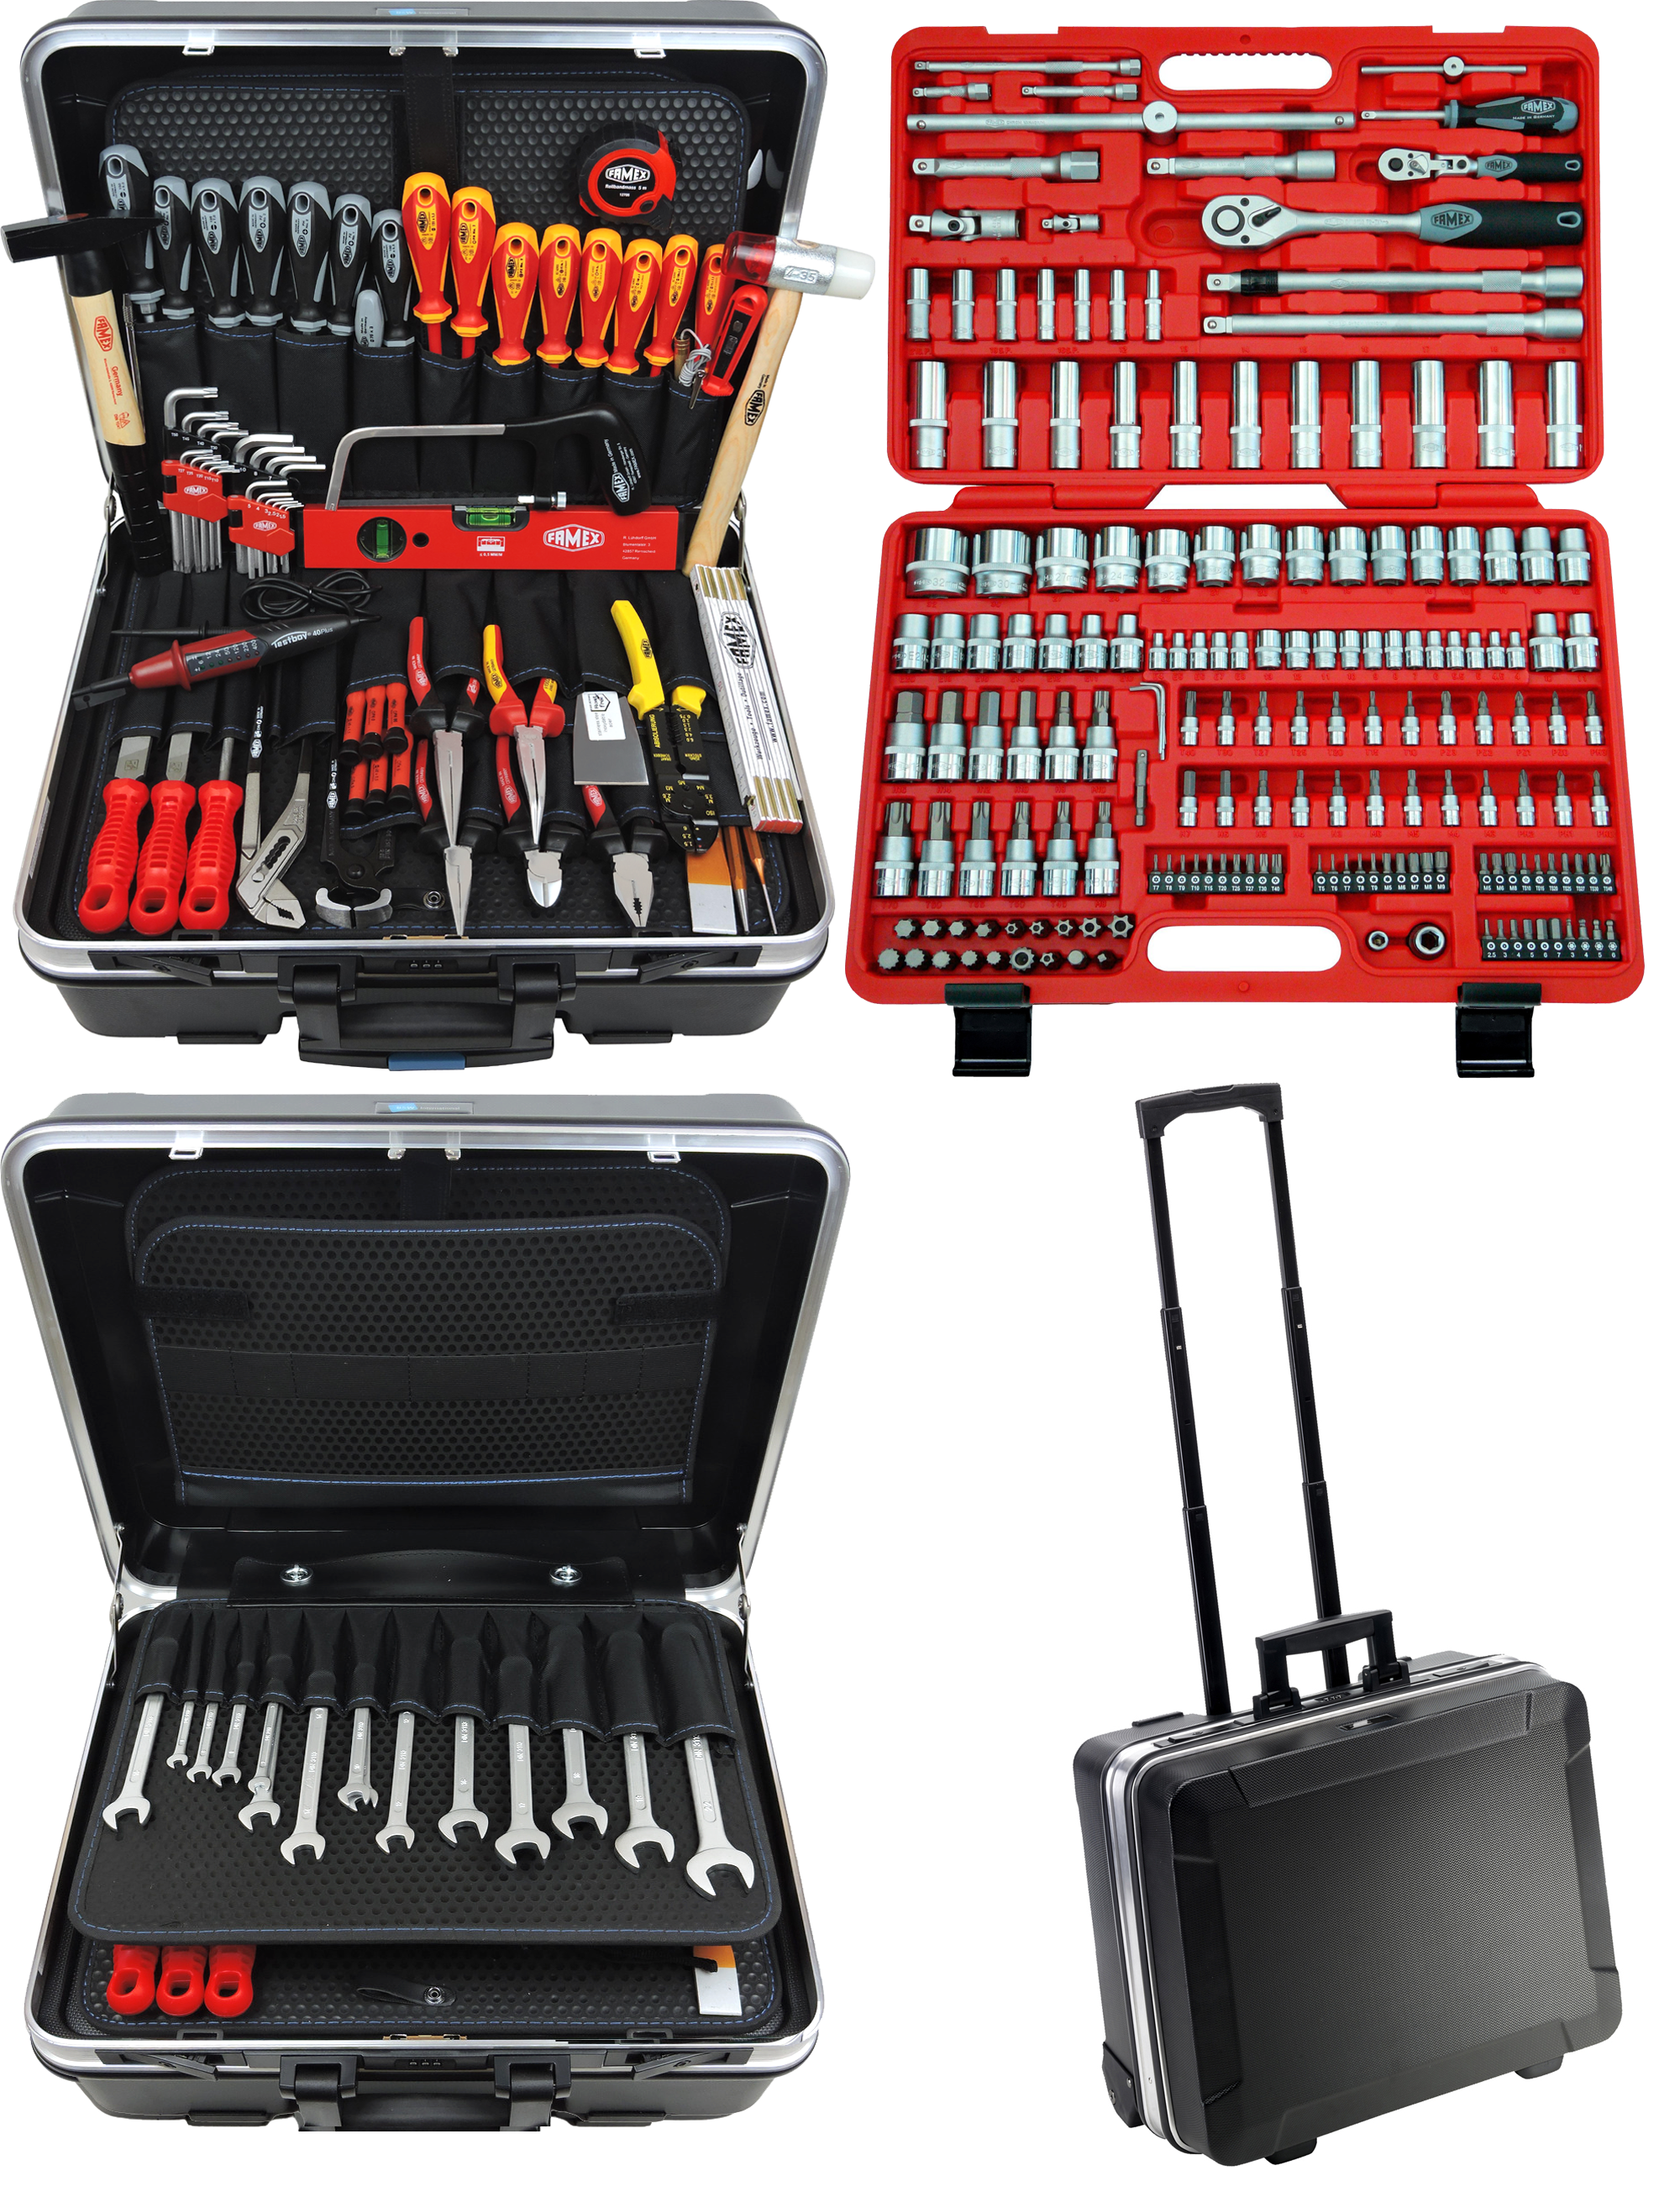 günstig Werkzeug mit kaufen in Trolley Profi Set online 36L und Werkzeuge - 604-18 FAMEX Schalenkoffer Werkzeugkoffer Steckschlüsselsatz - ABS